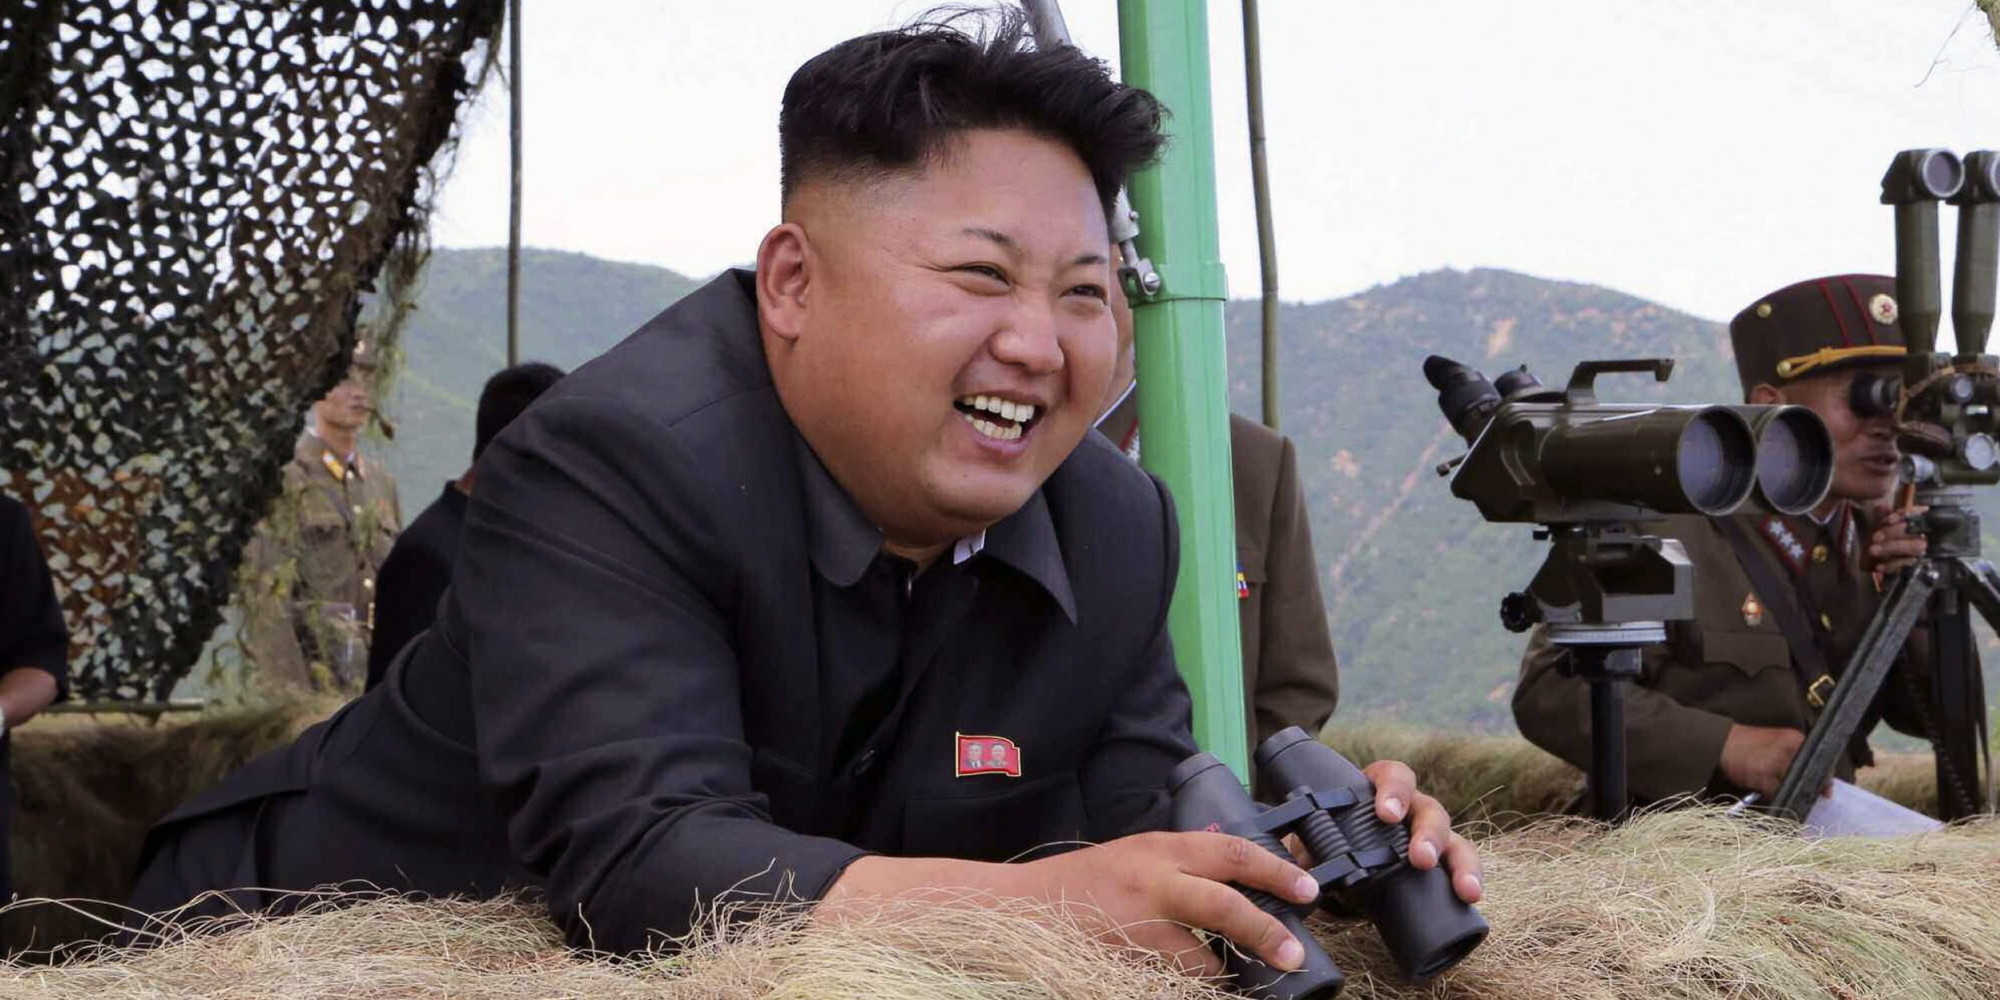   شاهد|| رئيس كوريا الشمالية يرسل الفاسدين إلى «تحت الأرض»